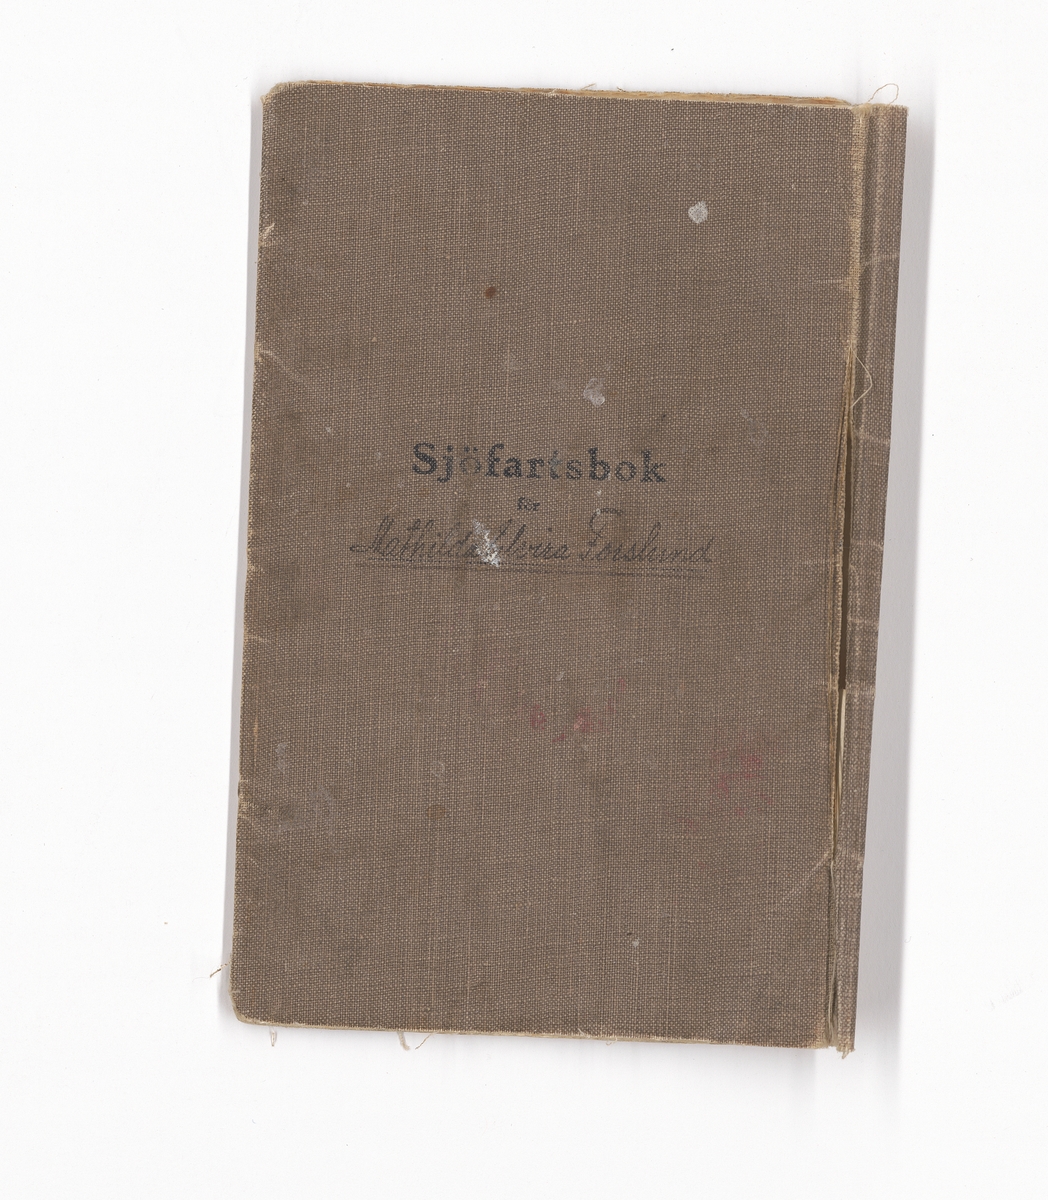 En brun sliten sjöfartsbok för Matilda Elvira Forslund, född 1871 och avliden 1968.